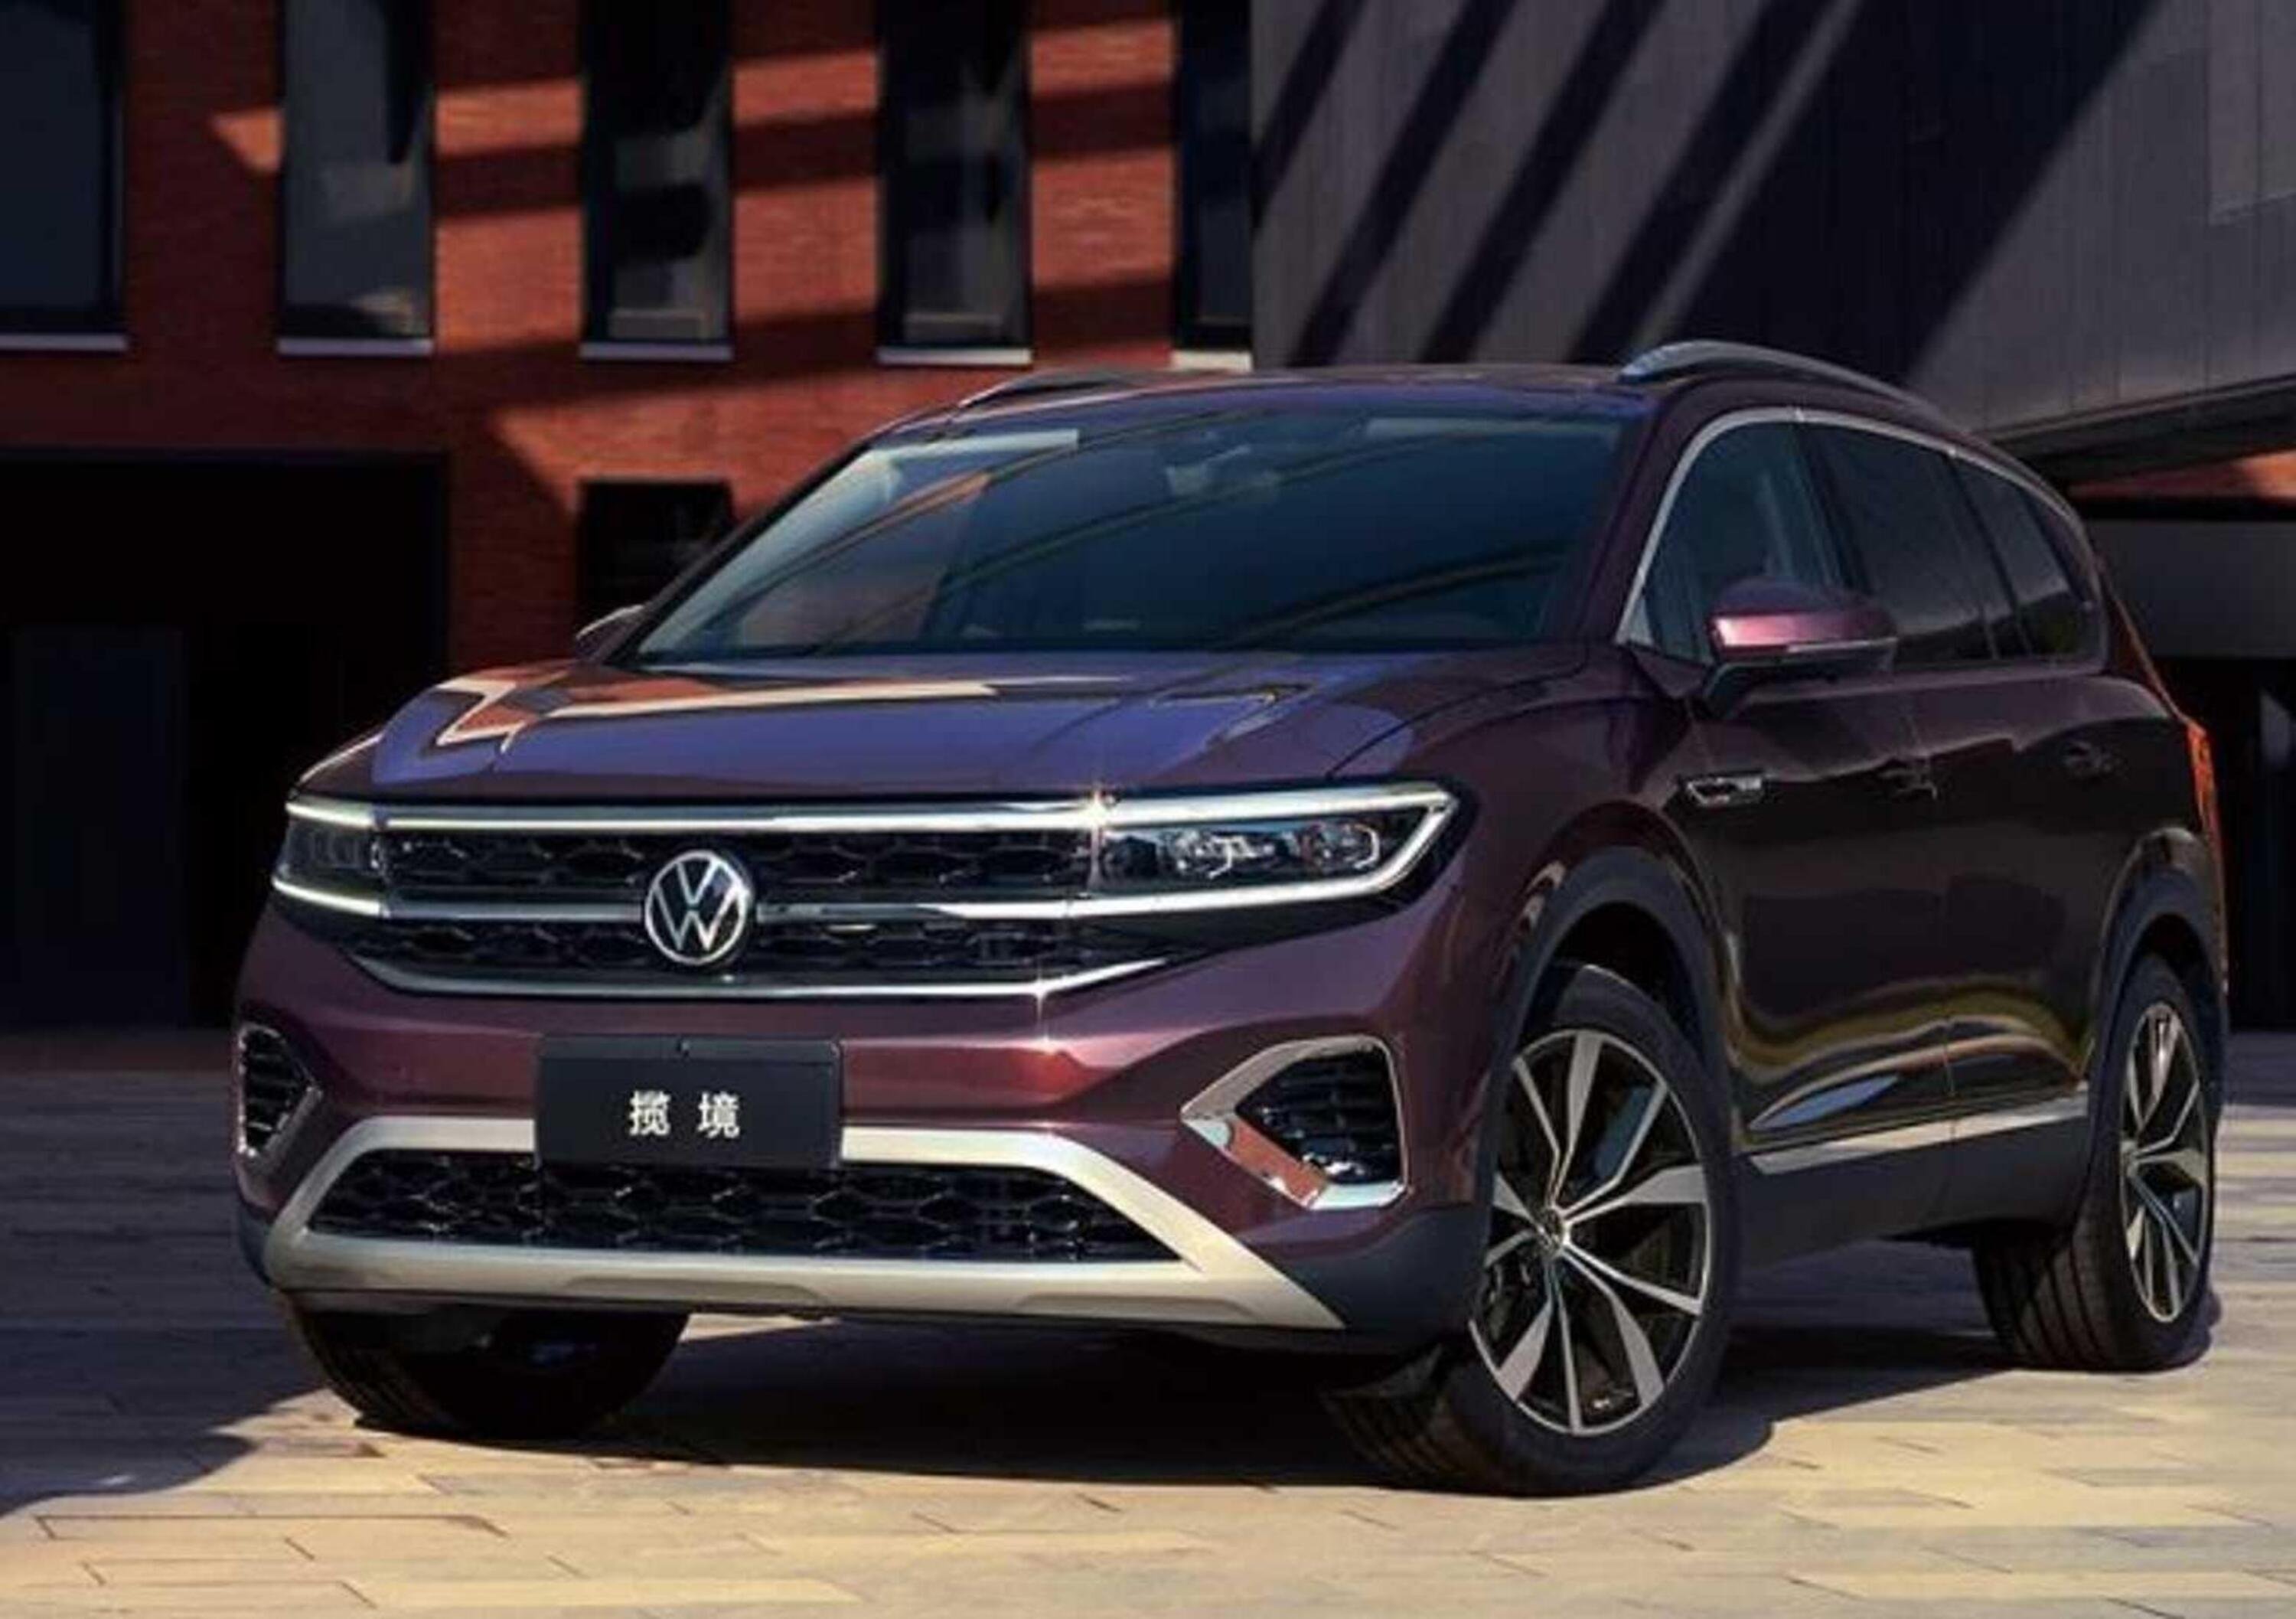 Volkswagen Talagon 2021, nuovo SUV a 7 posti al Salone di Shanghai 